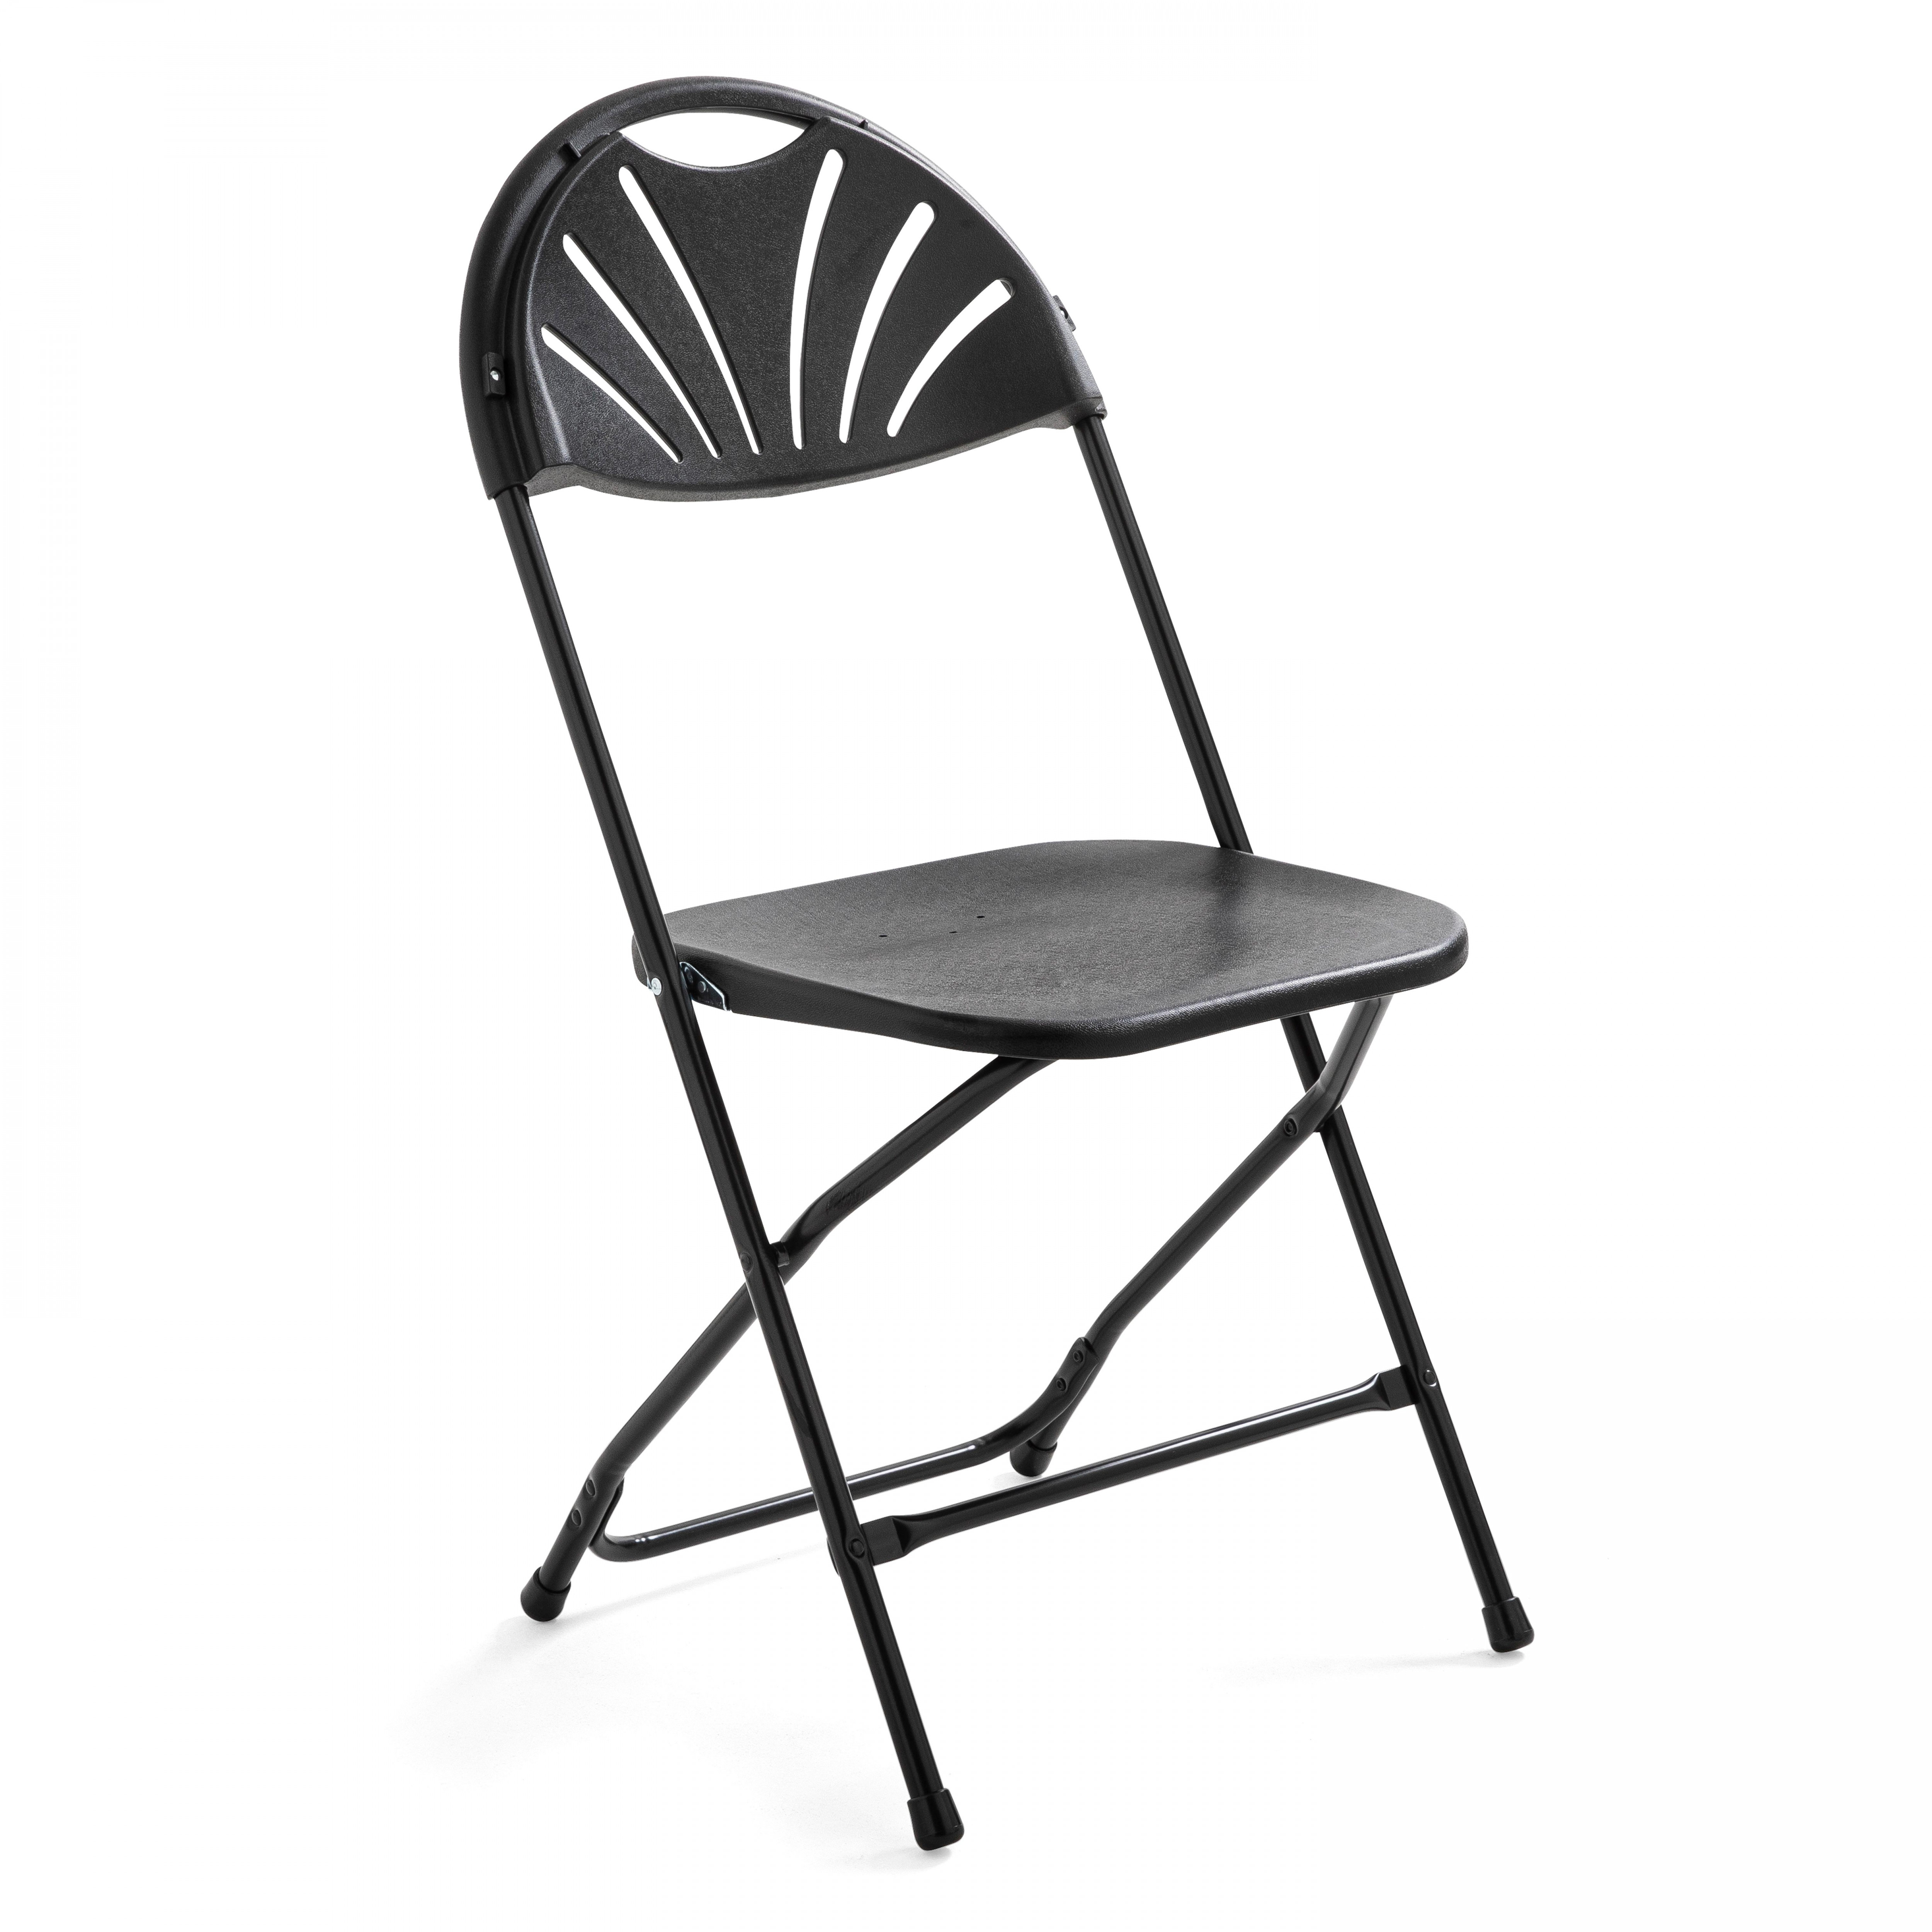 Chaise pliante noire en plastique